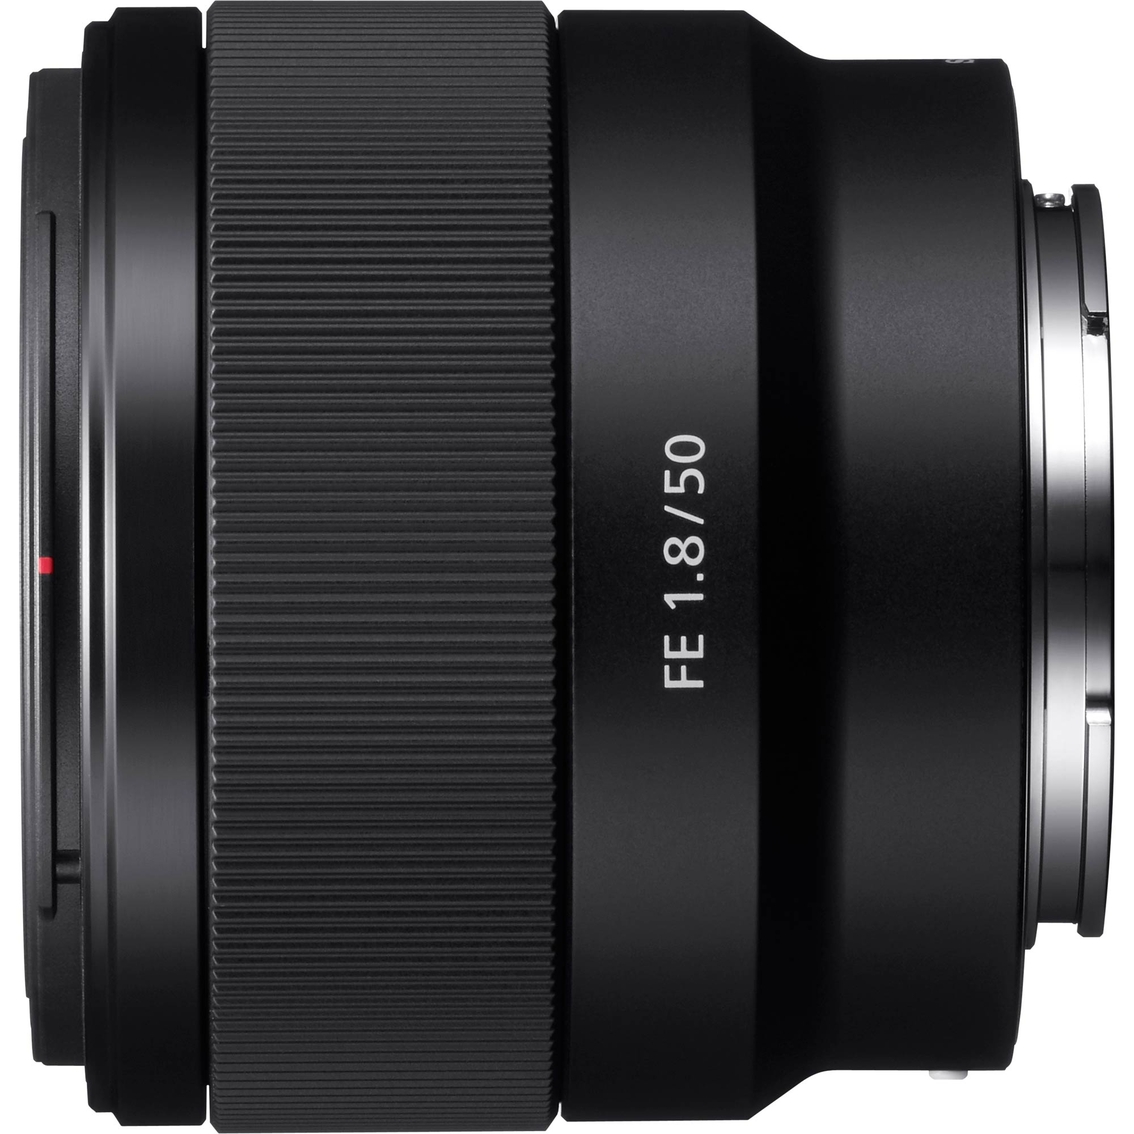 Sony SEL50F18F 50mm Full-frame E mount Fast Prime Lens - Image 2 of 2